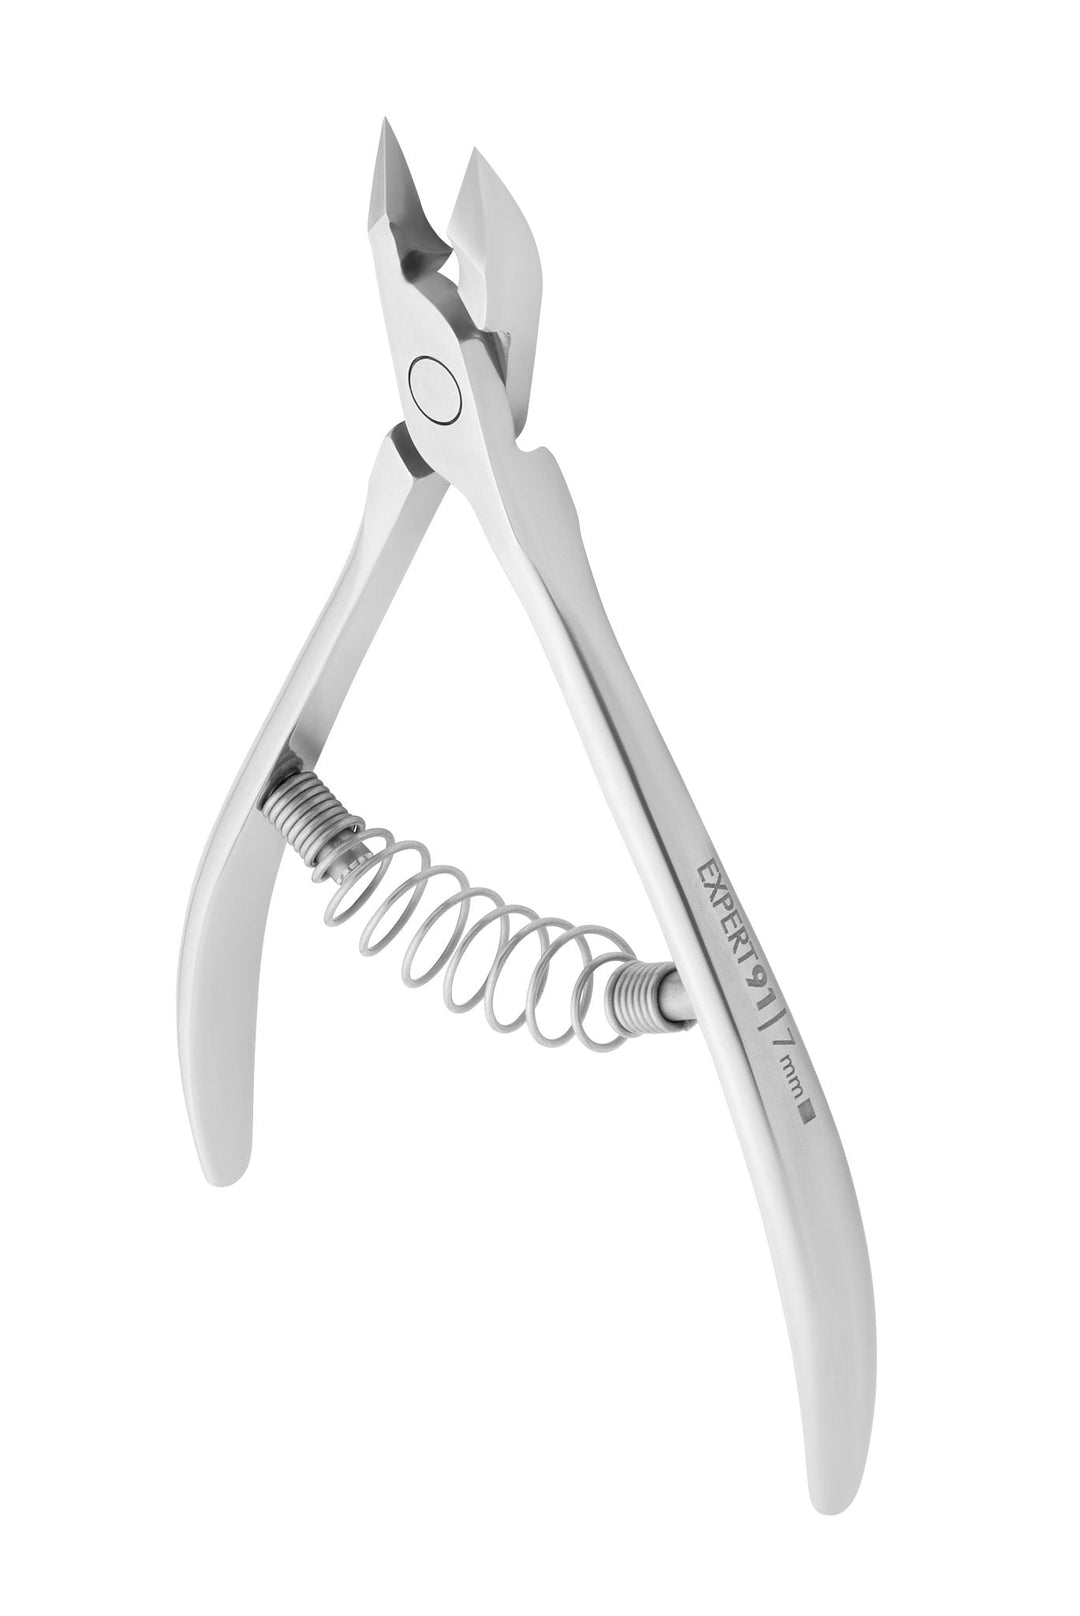 Staleks Cuticle Nipper Expert 91 - 7 mm Jaw | U-tools